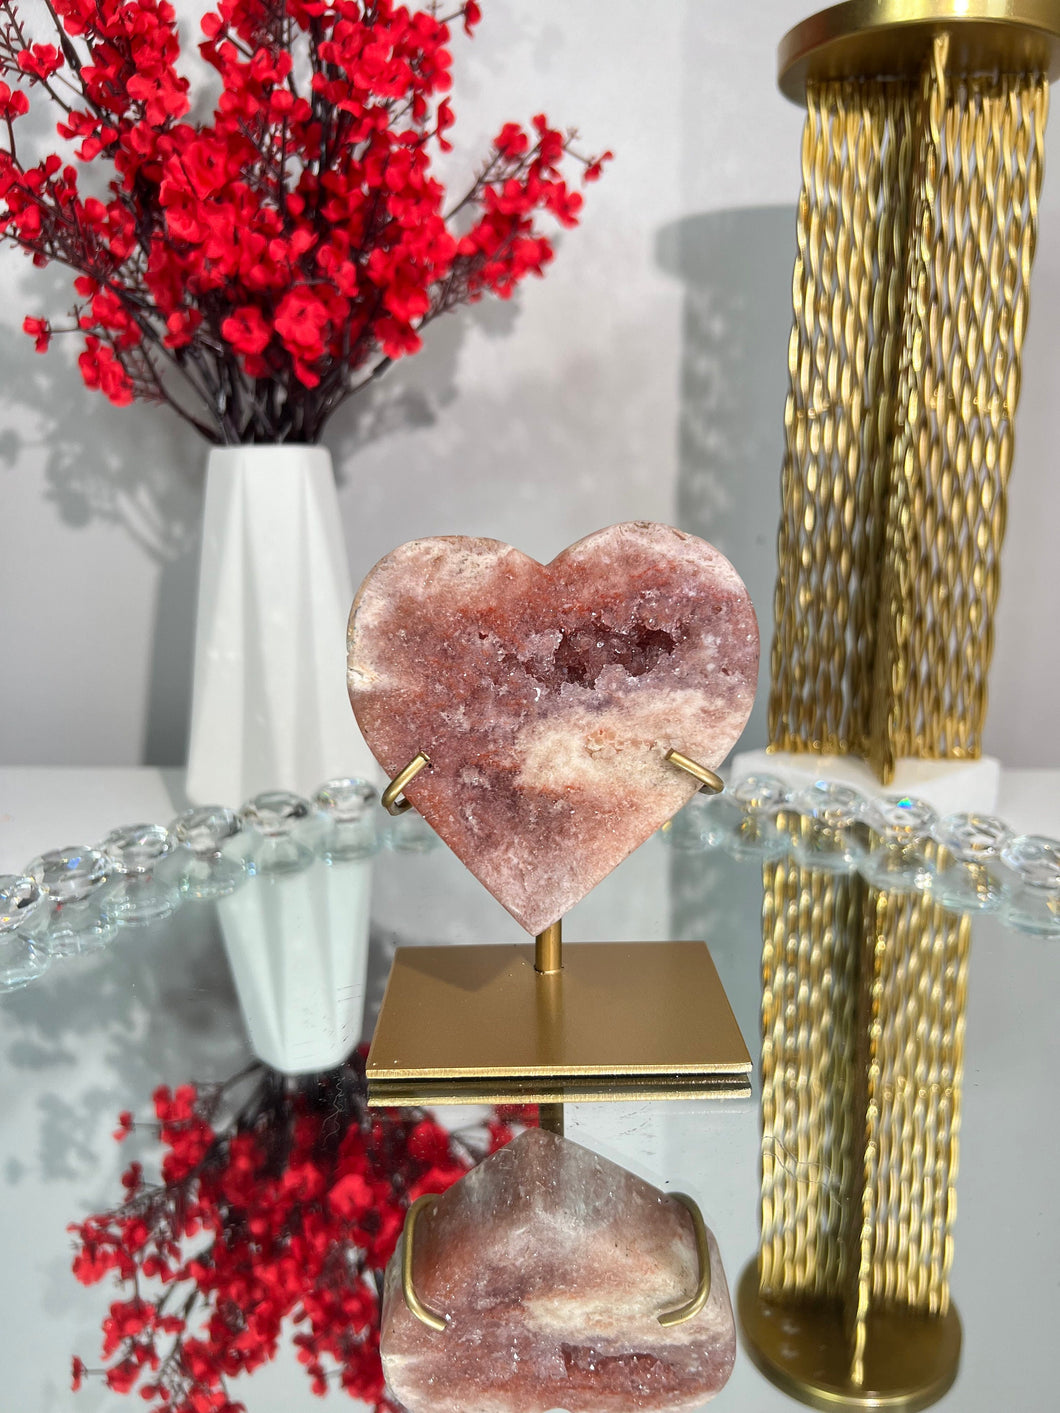 Druzy Pink amethyst heart with amethyst  2280